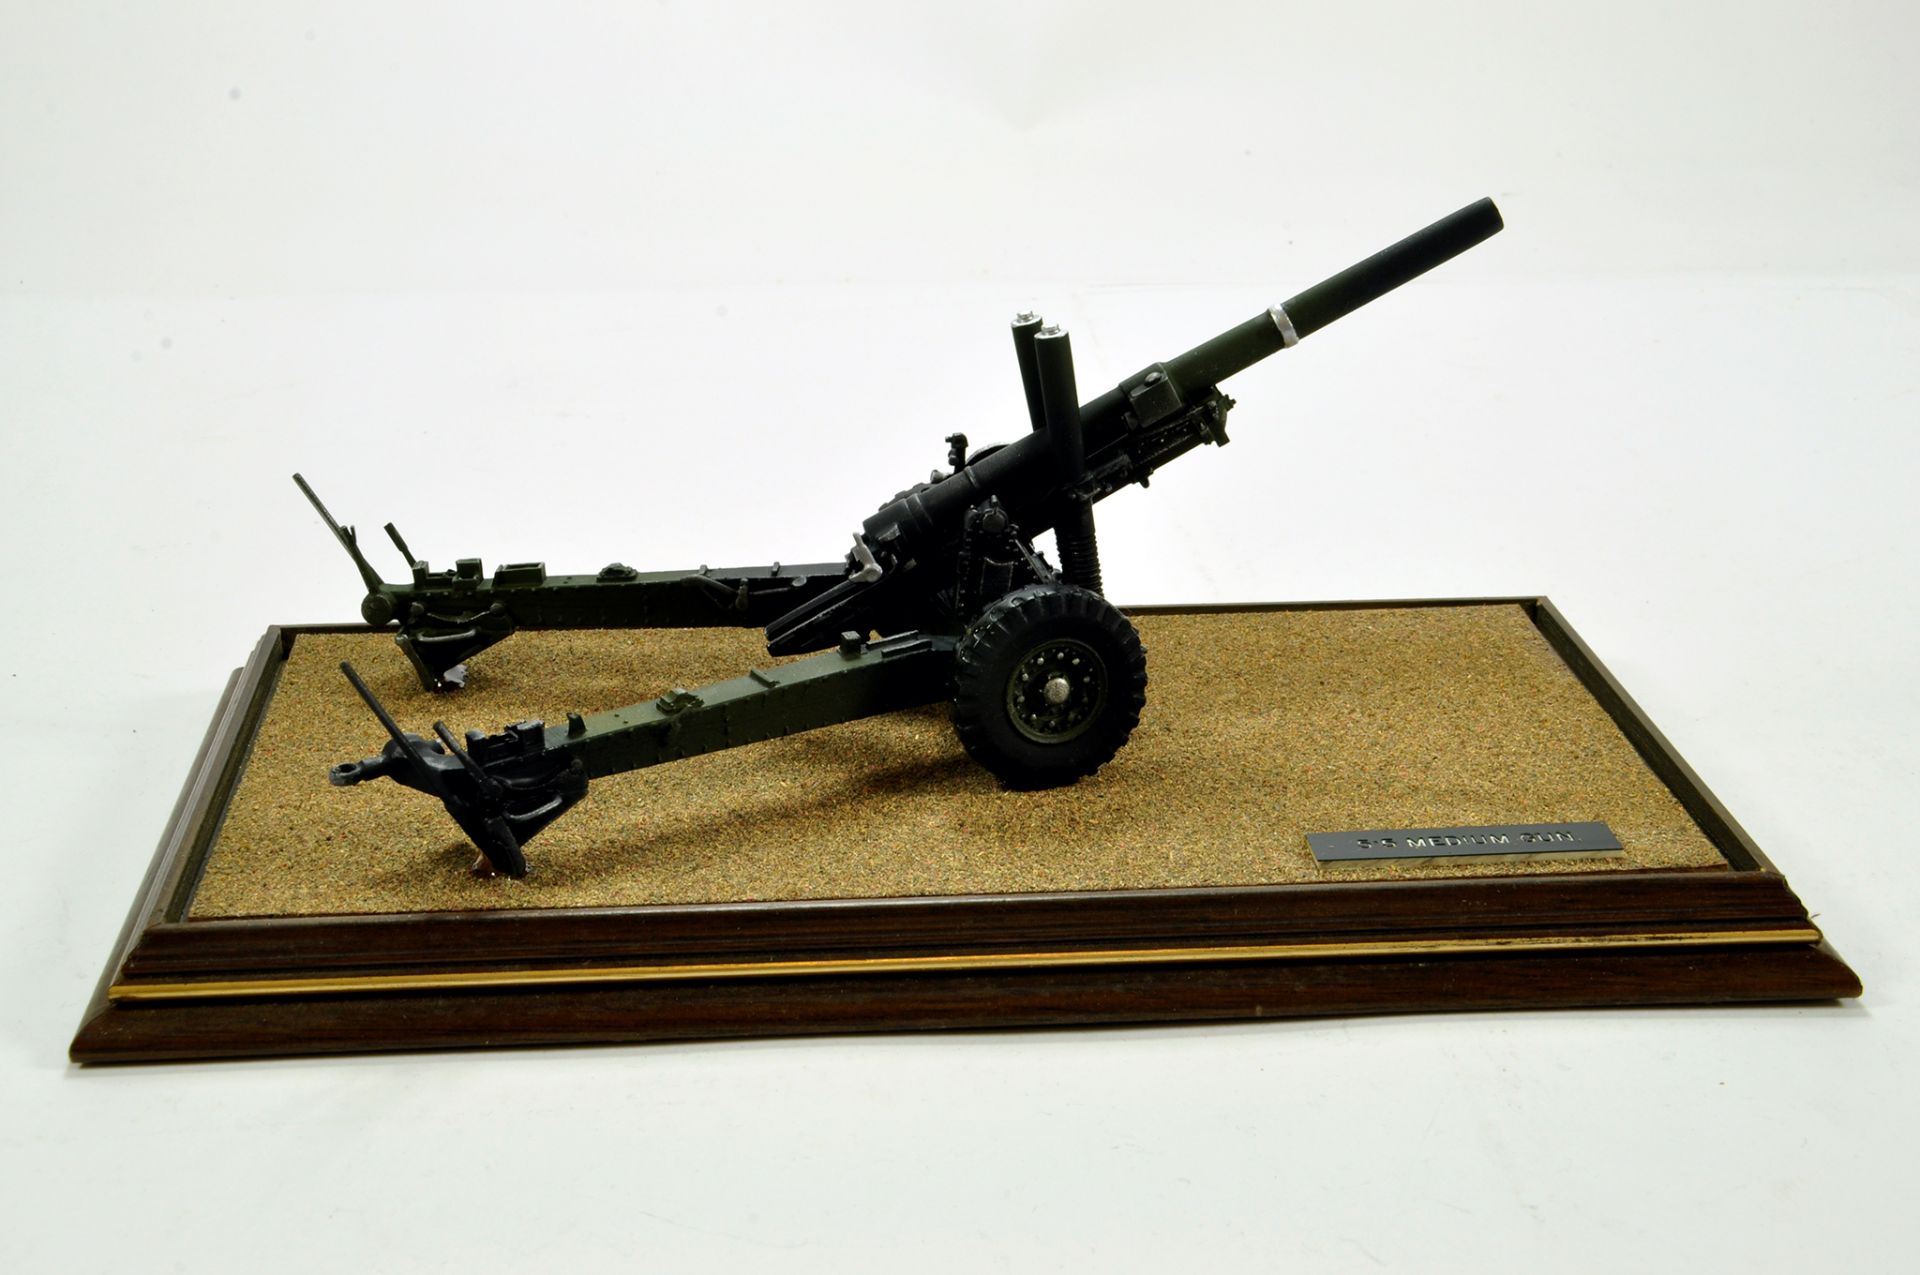 Impressive White Metal 1/32 British Army 5.5 Inch Medium Gun in Display Case. Superb Piece.